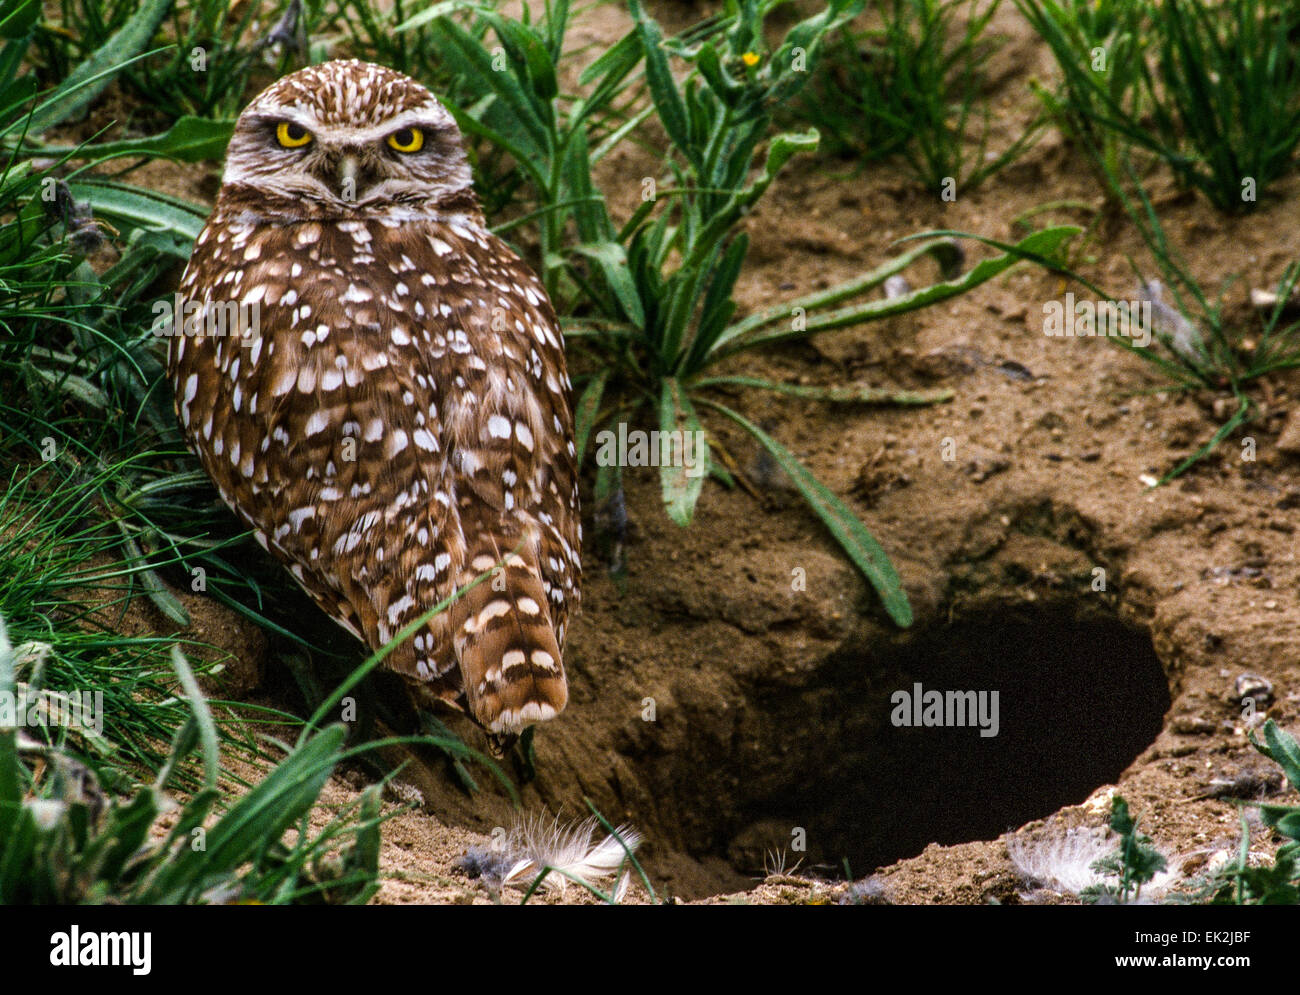 Burrowing owl (Athene cunicularia) near nest /burrowing hole. Stock Photo